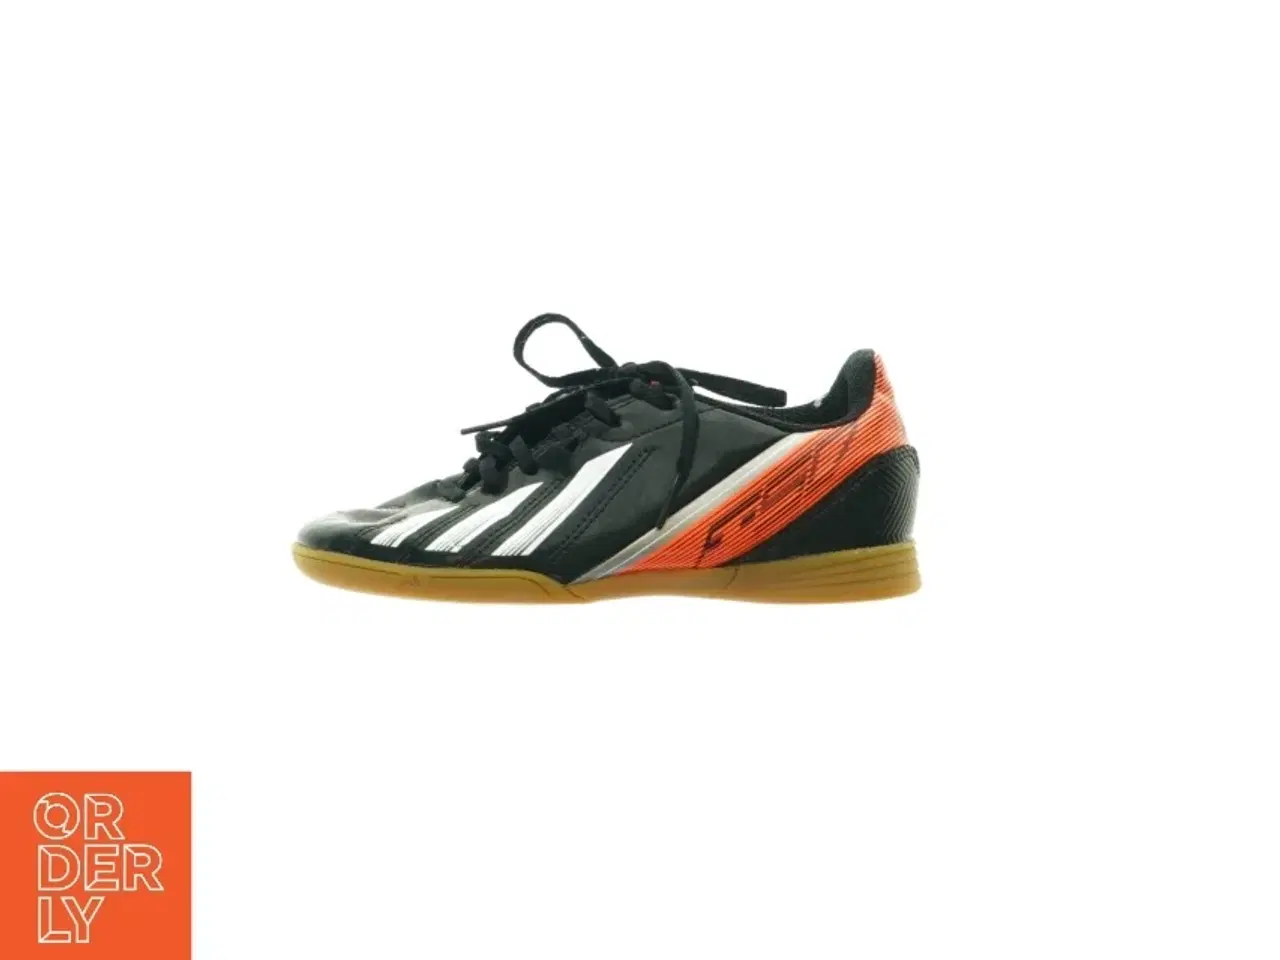 Billede 1 - Fodboldstøvler til indendørs brug fra adidas (str. 33)